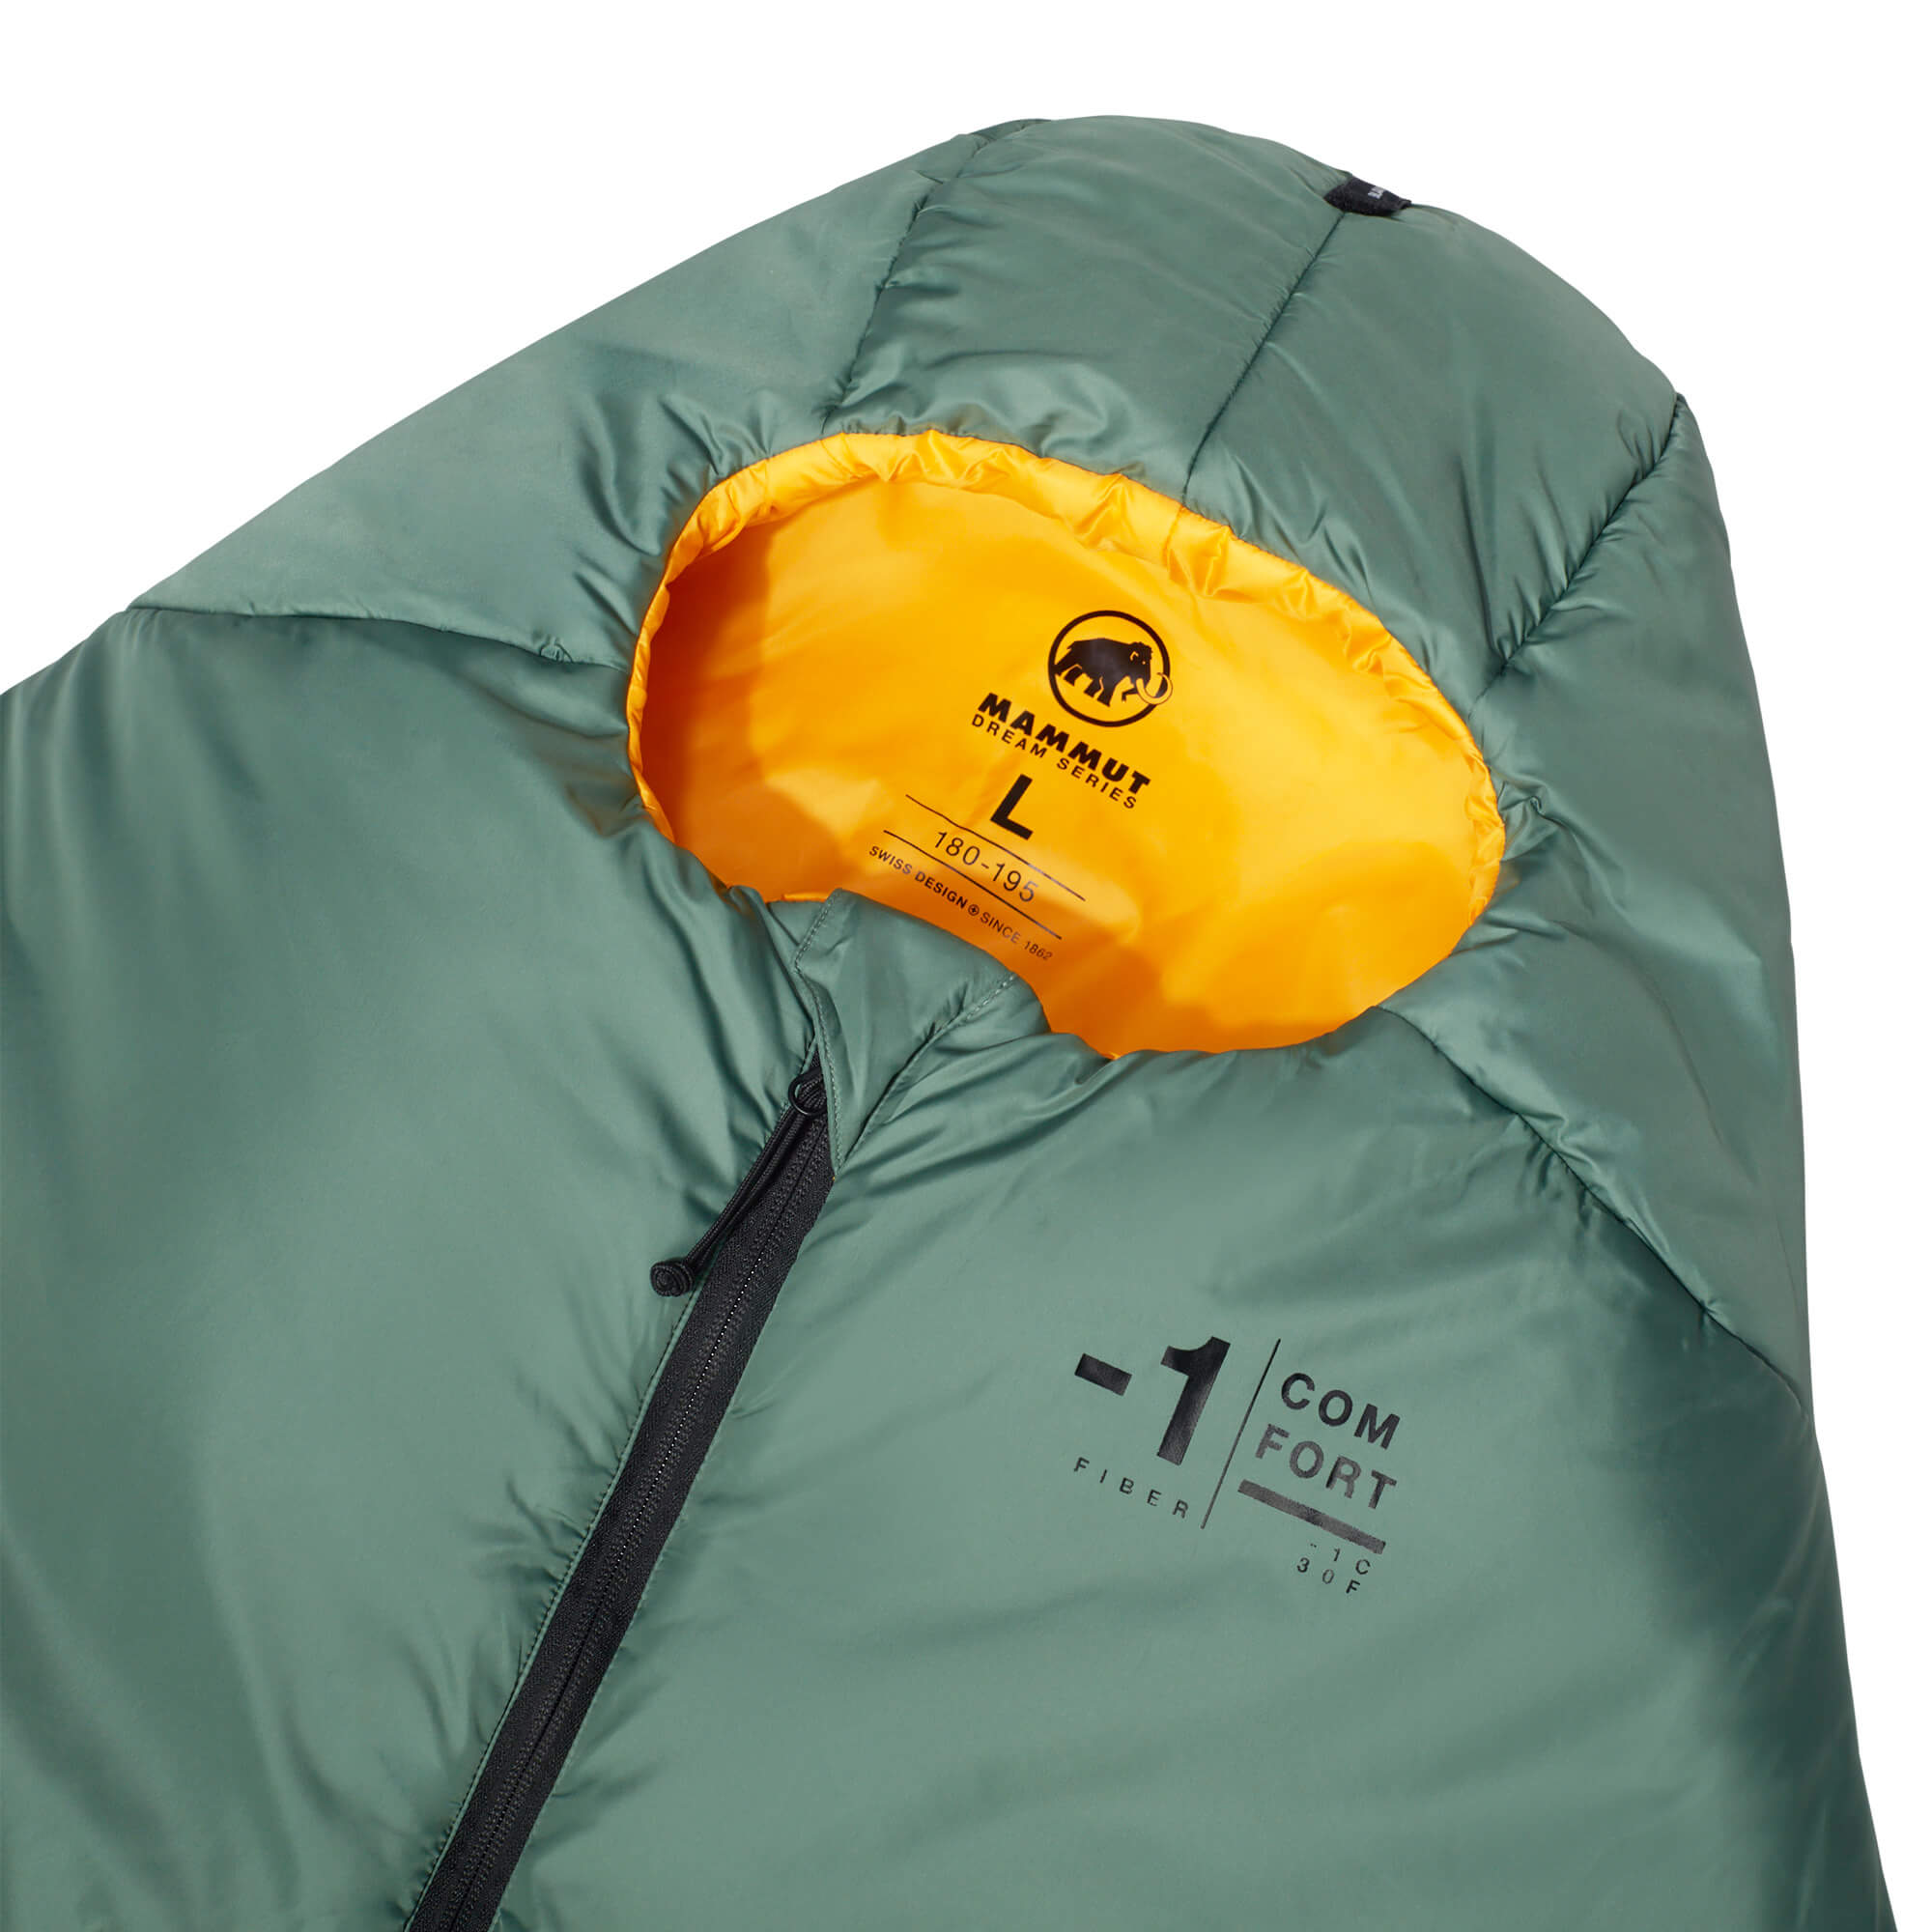 Mammut Comfort Fiber Bag -1C Lightweight Sleeping Bag